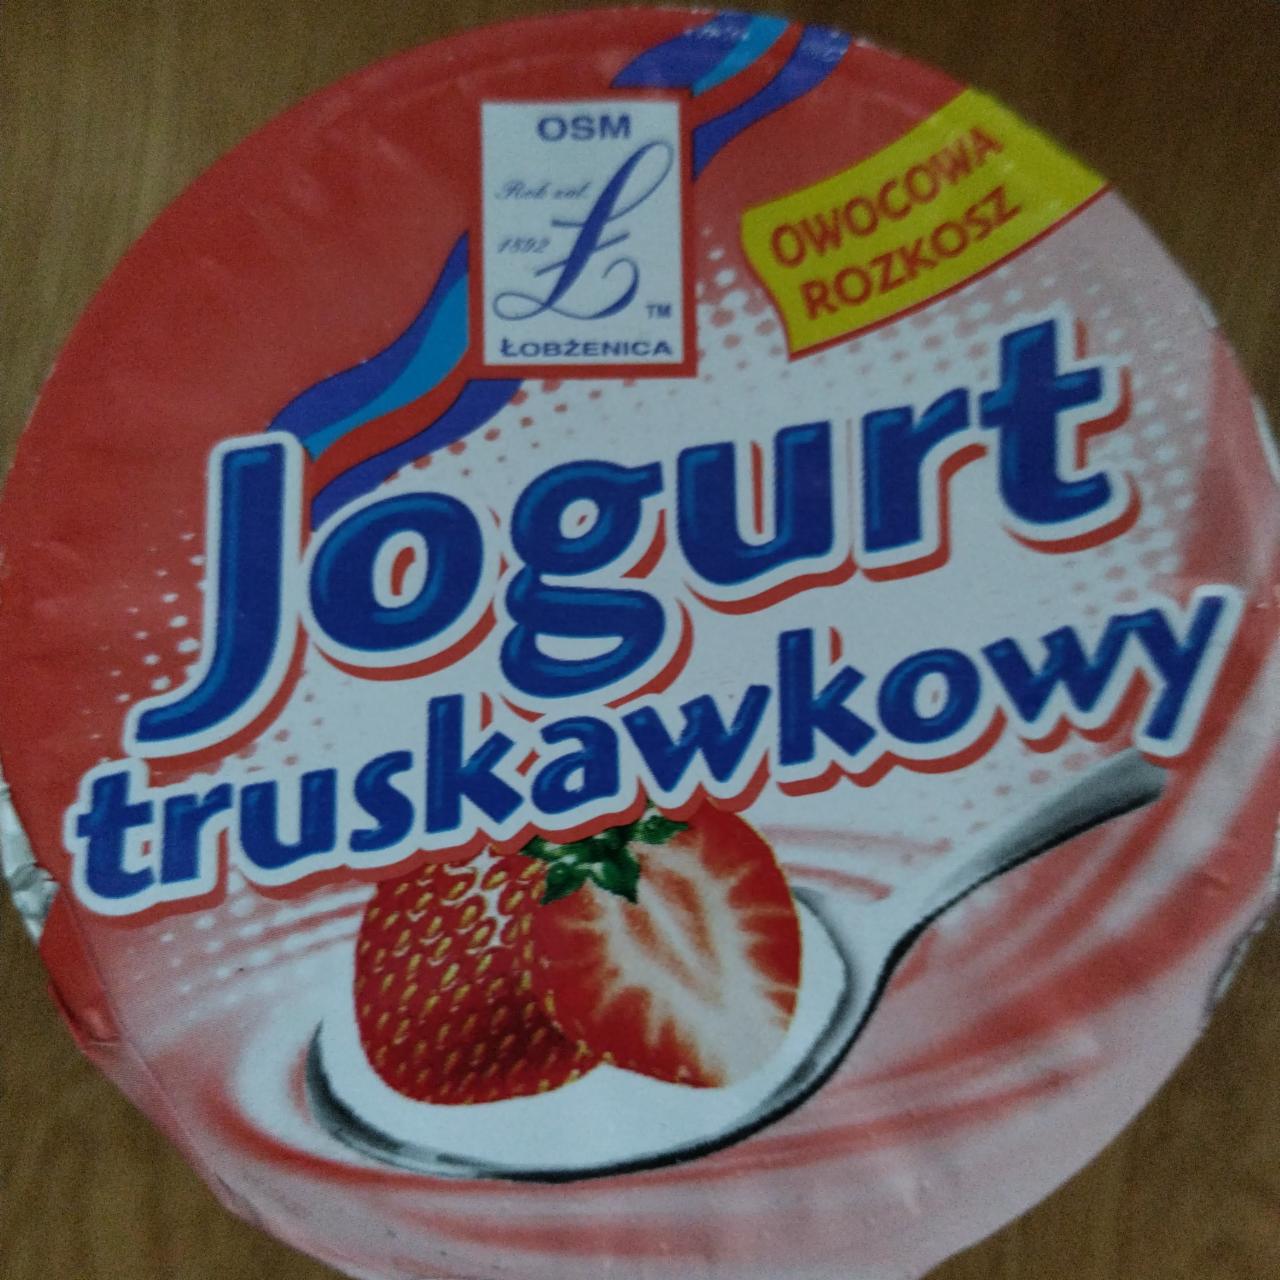 Fotografie - Jogurt truskawkowy Osm łobżenica